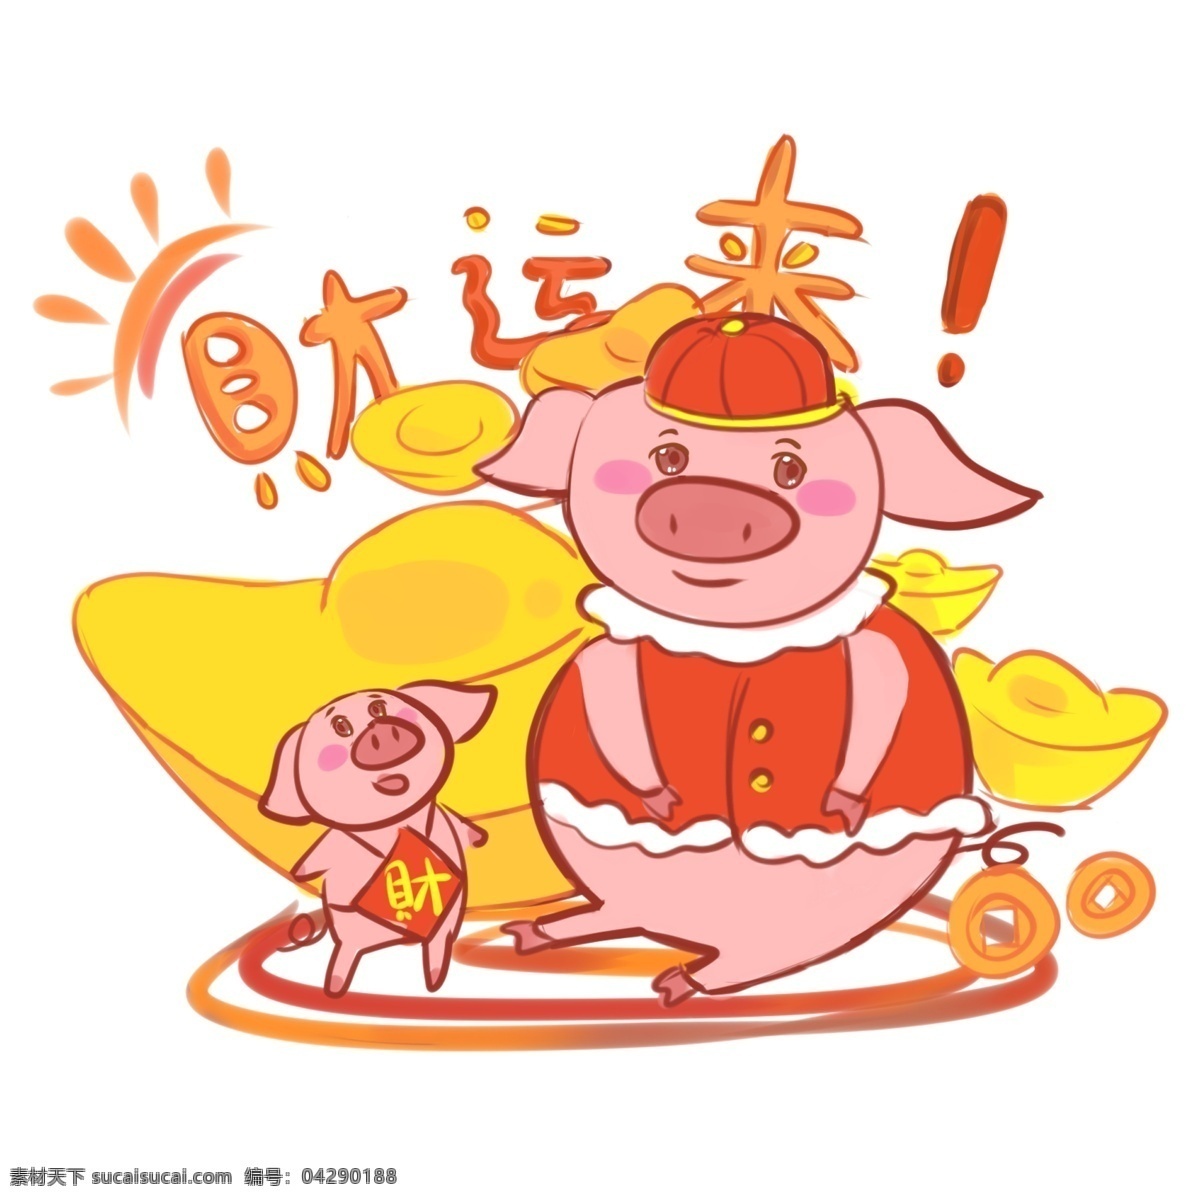 新年 两 只 猪 卡通 主题 插画 金银财宝 可爱小猪 快乐 数字 春节 欢乐 狂欢 猪年 粉猪 红包 缤纷 舞蹈 两只猪 跳舞 除夕 树 福